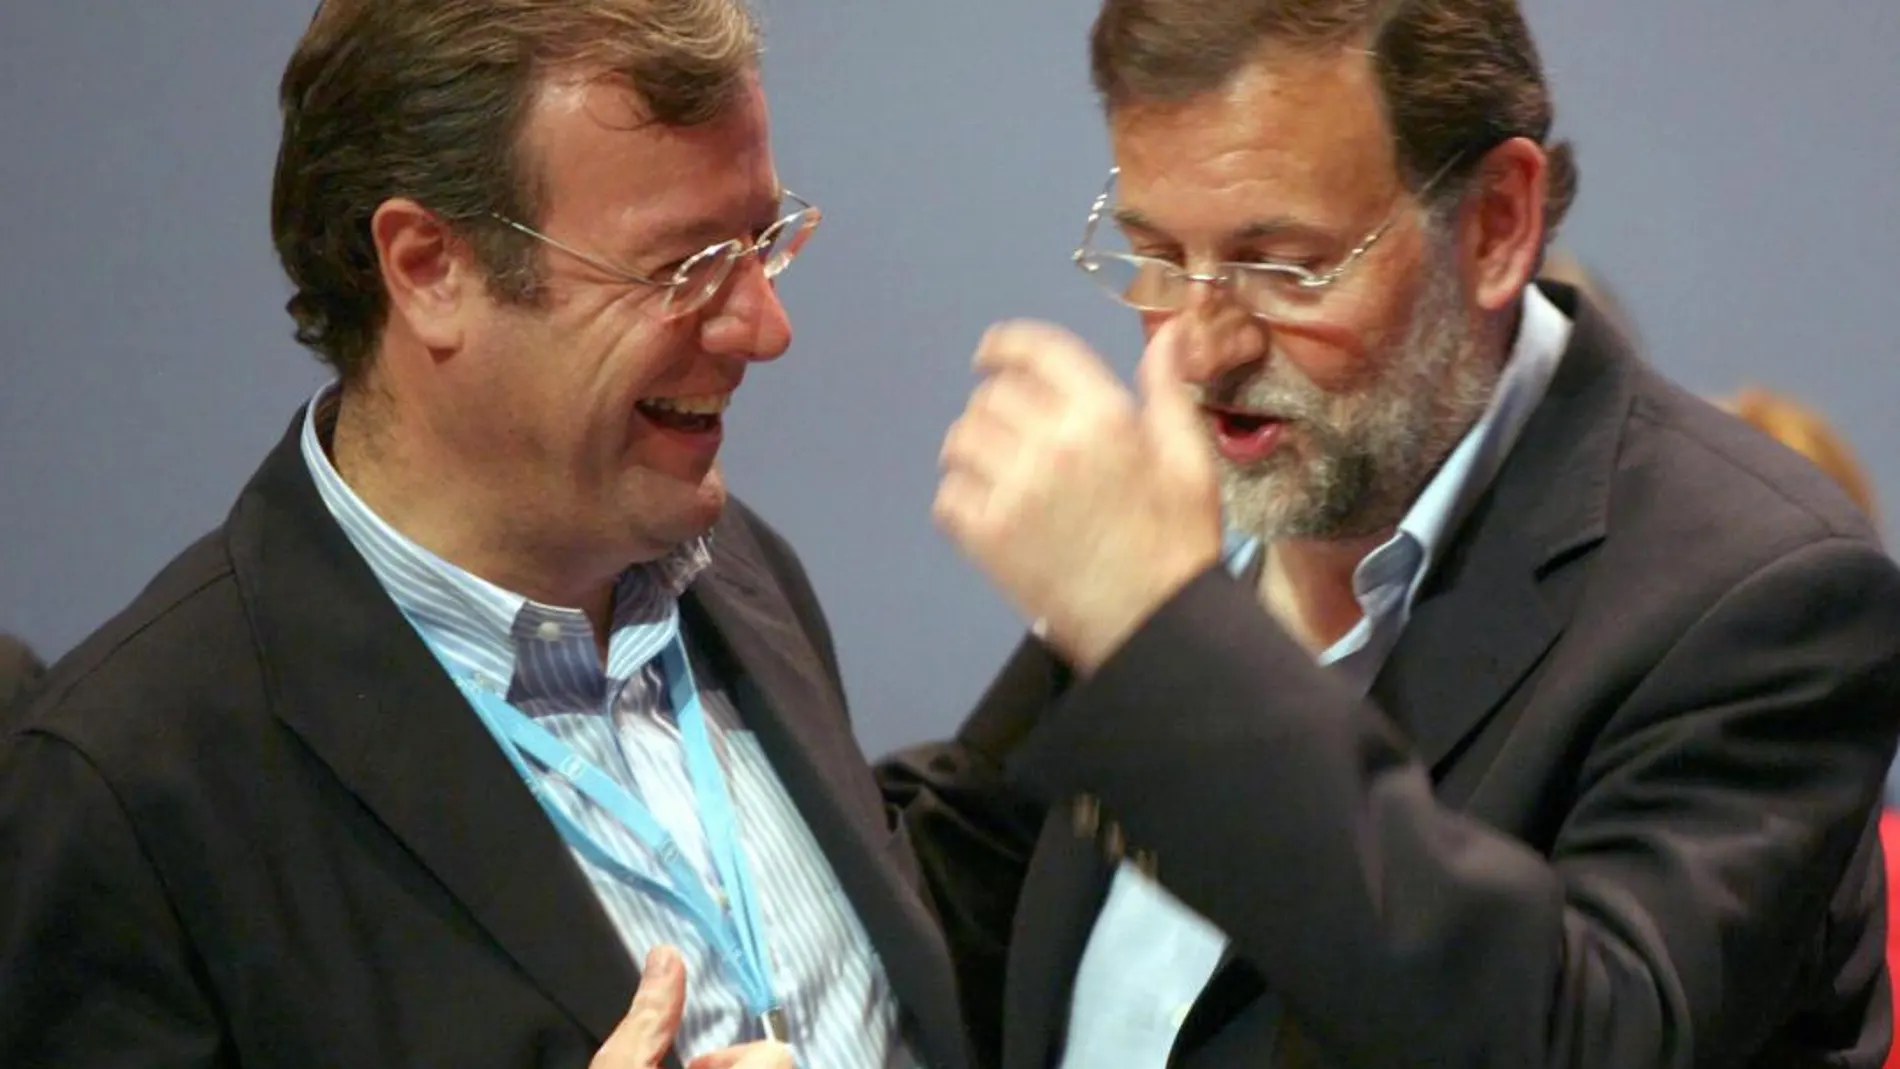 Antonio Silván y Mariano Rajoy, conversan animadamente, durante un encuentro del PP en Valladolid